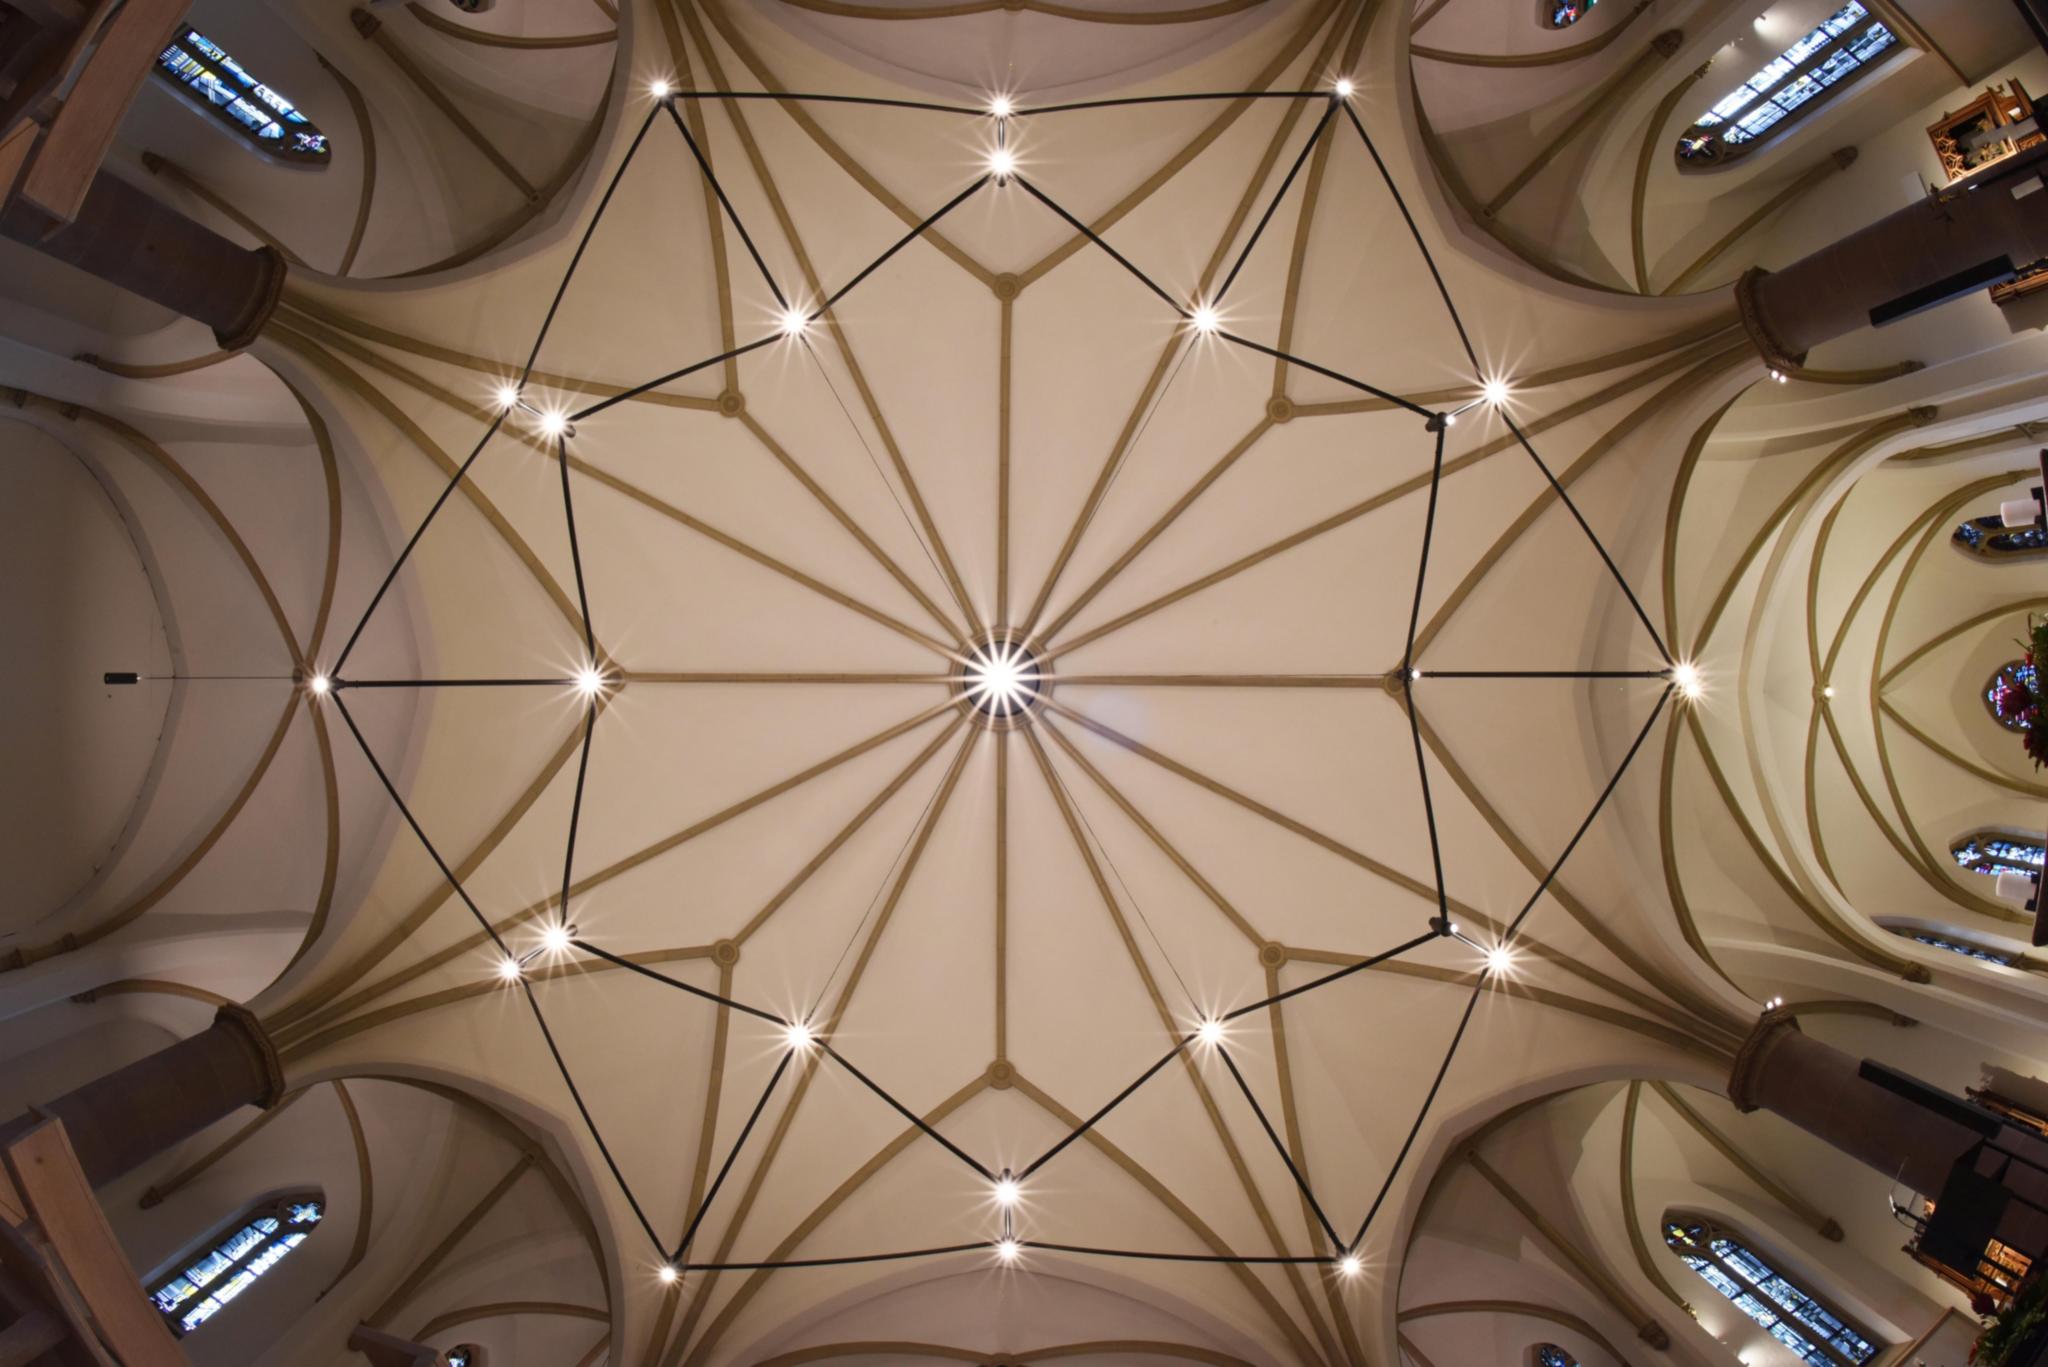 Gewölbe der Kirche St. Mariä Empfängnis Venn (Mönchengladbach) mit neuem Leuchter zur neuen Wahrnehmung